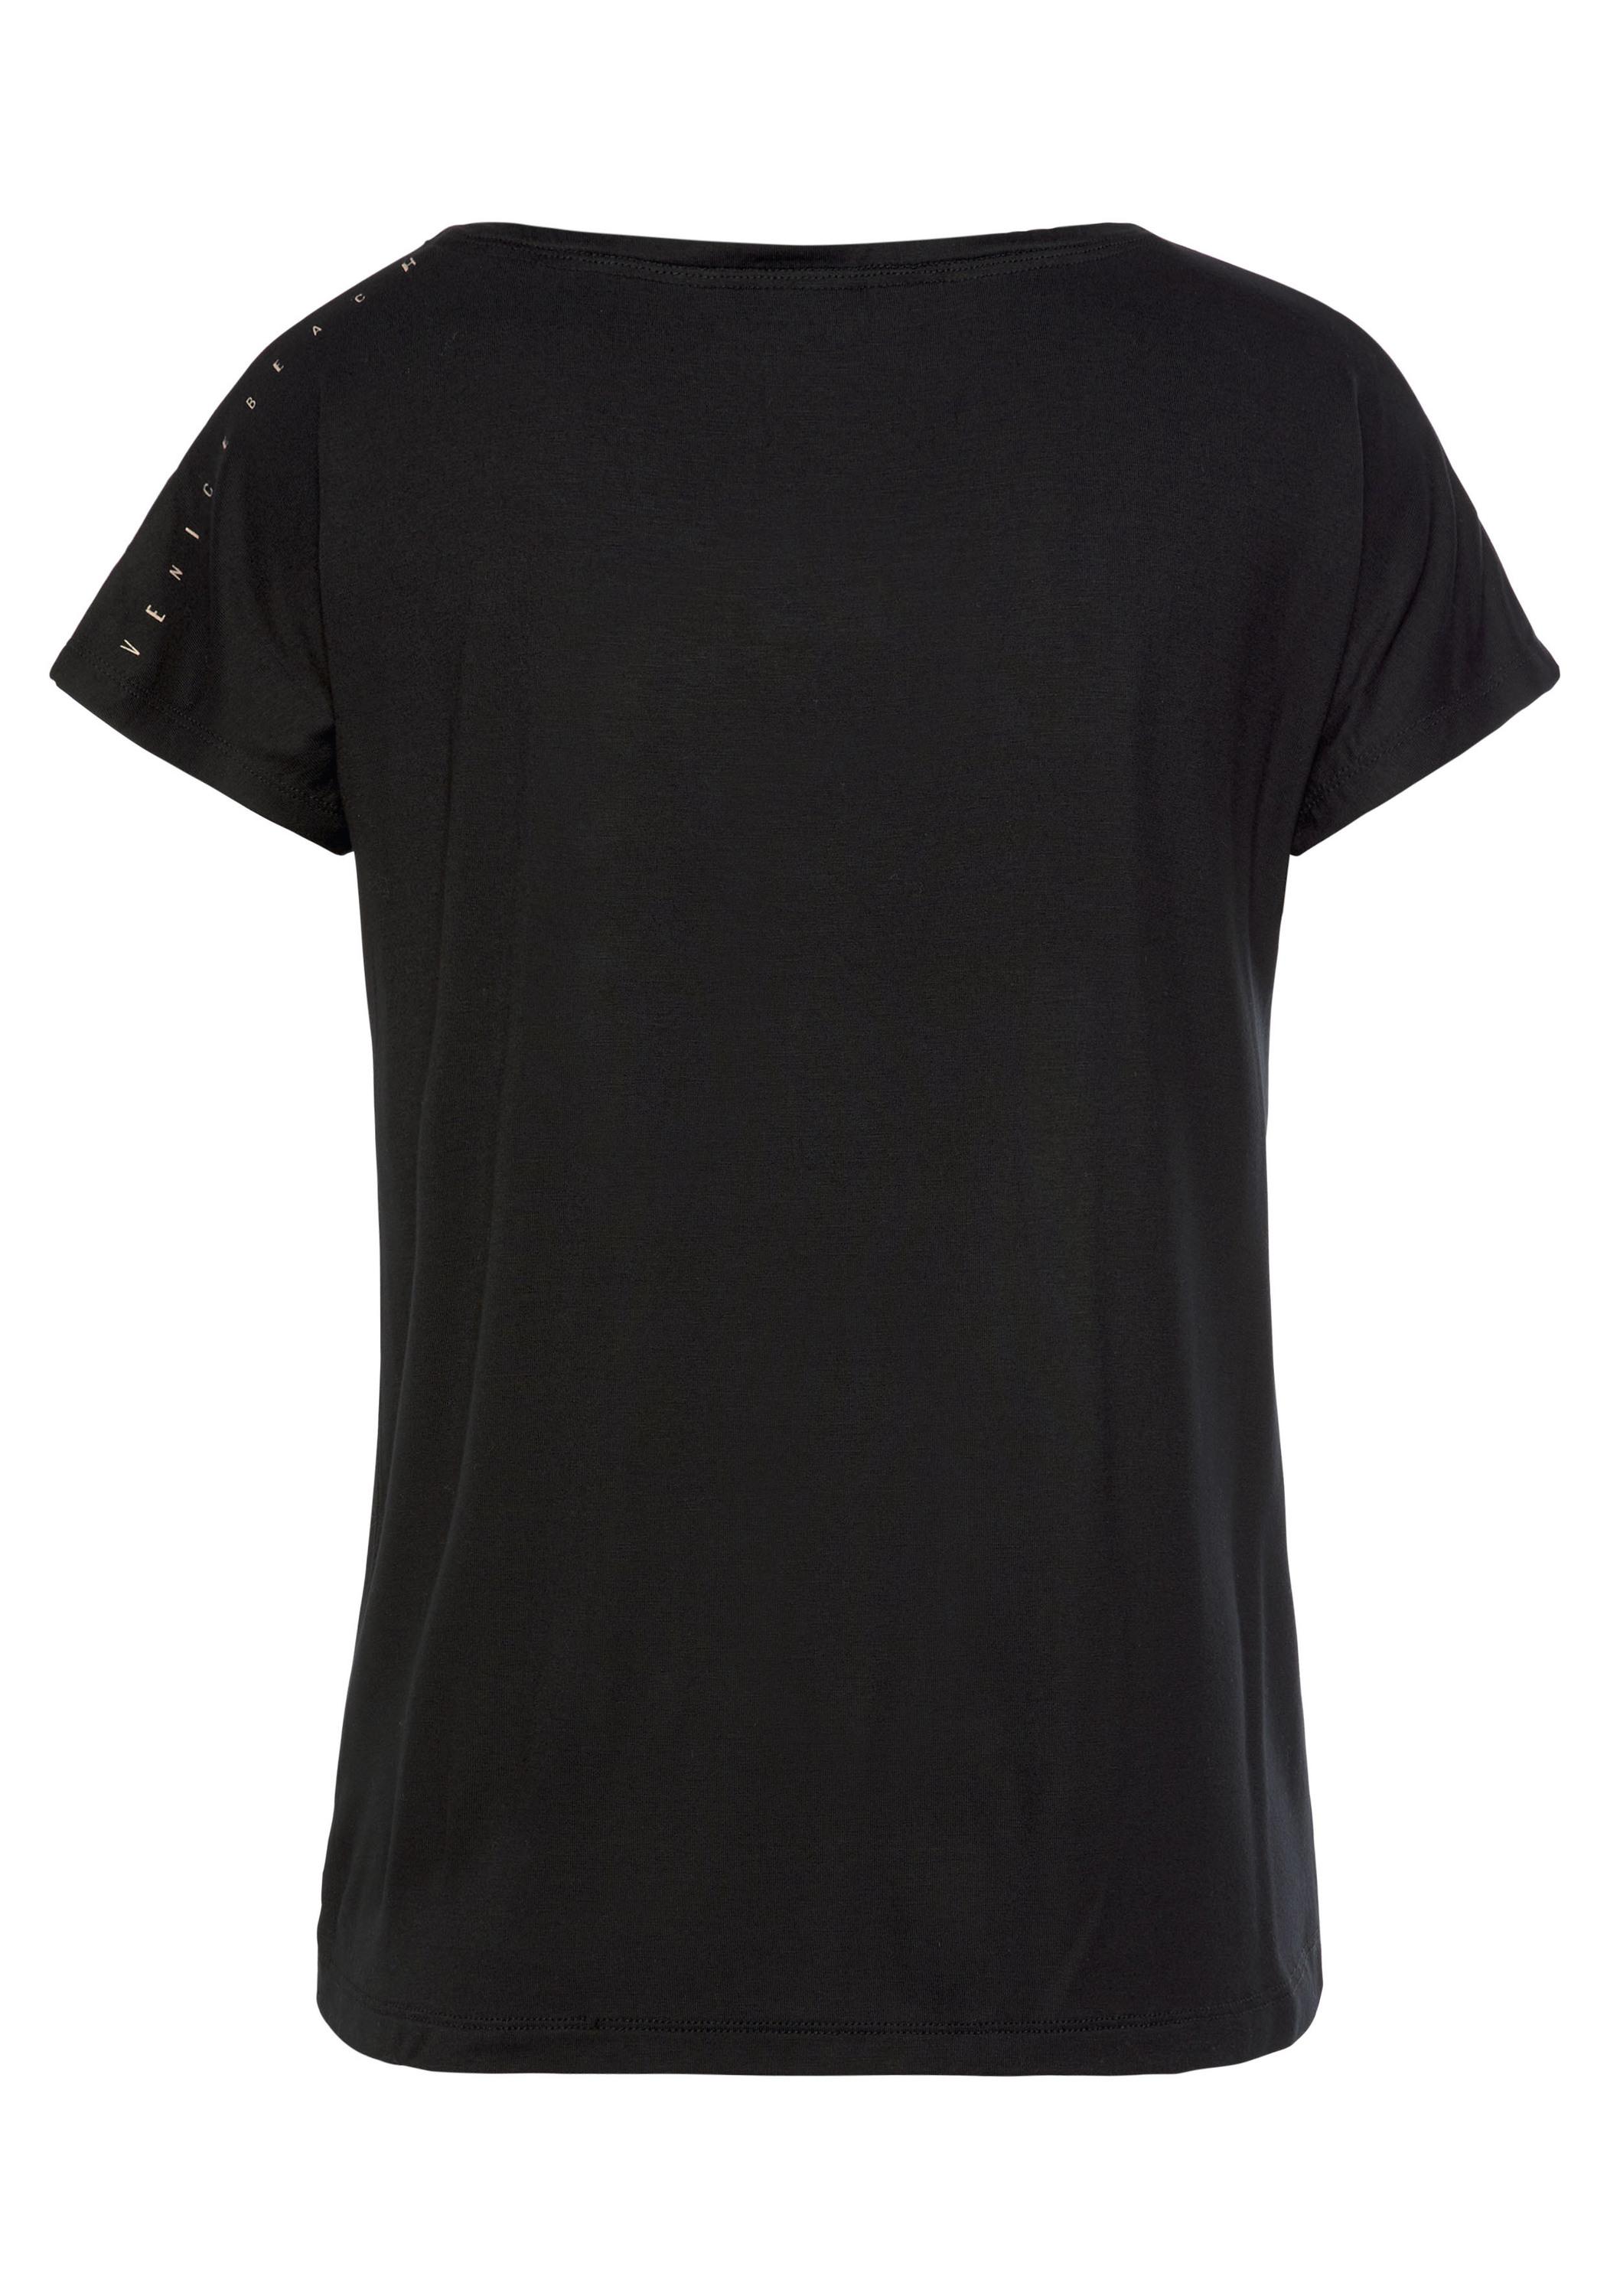 VENICE BEACH T-Shirt schwarz Damen Online von kaufen Shop im SportScheck